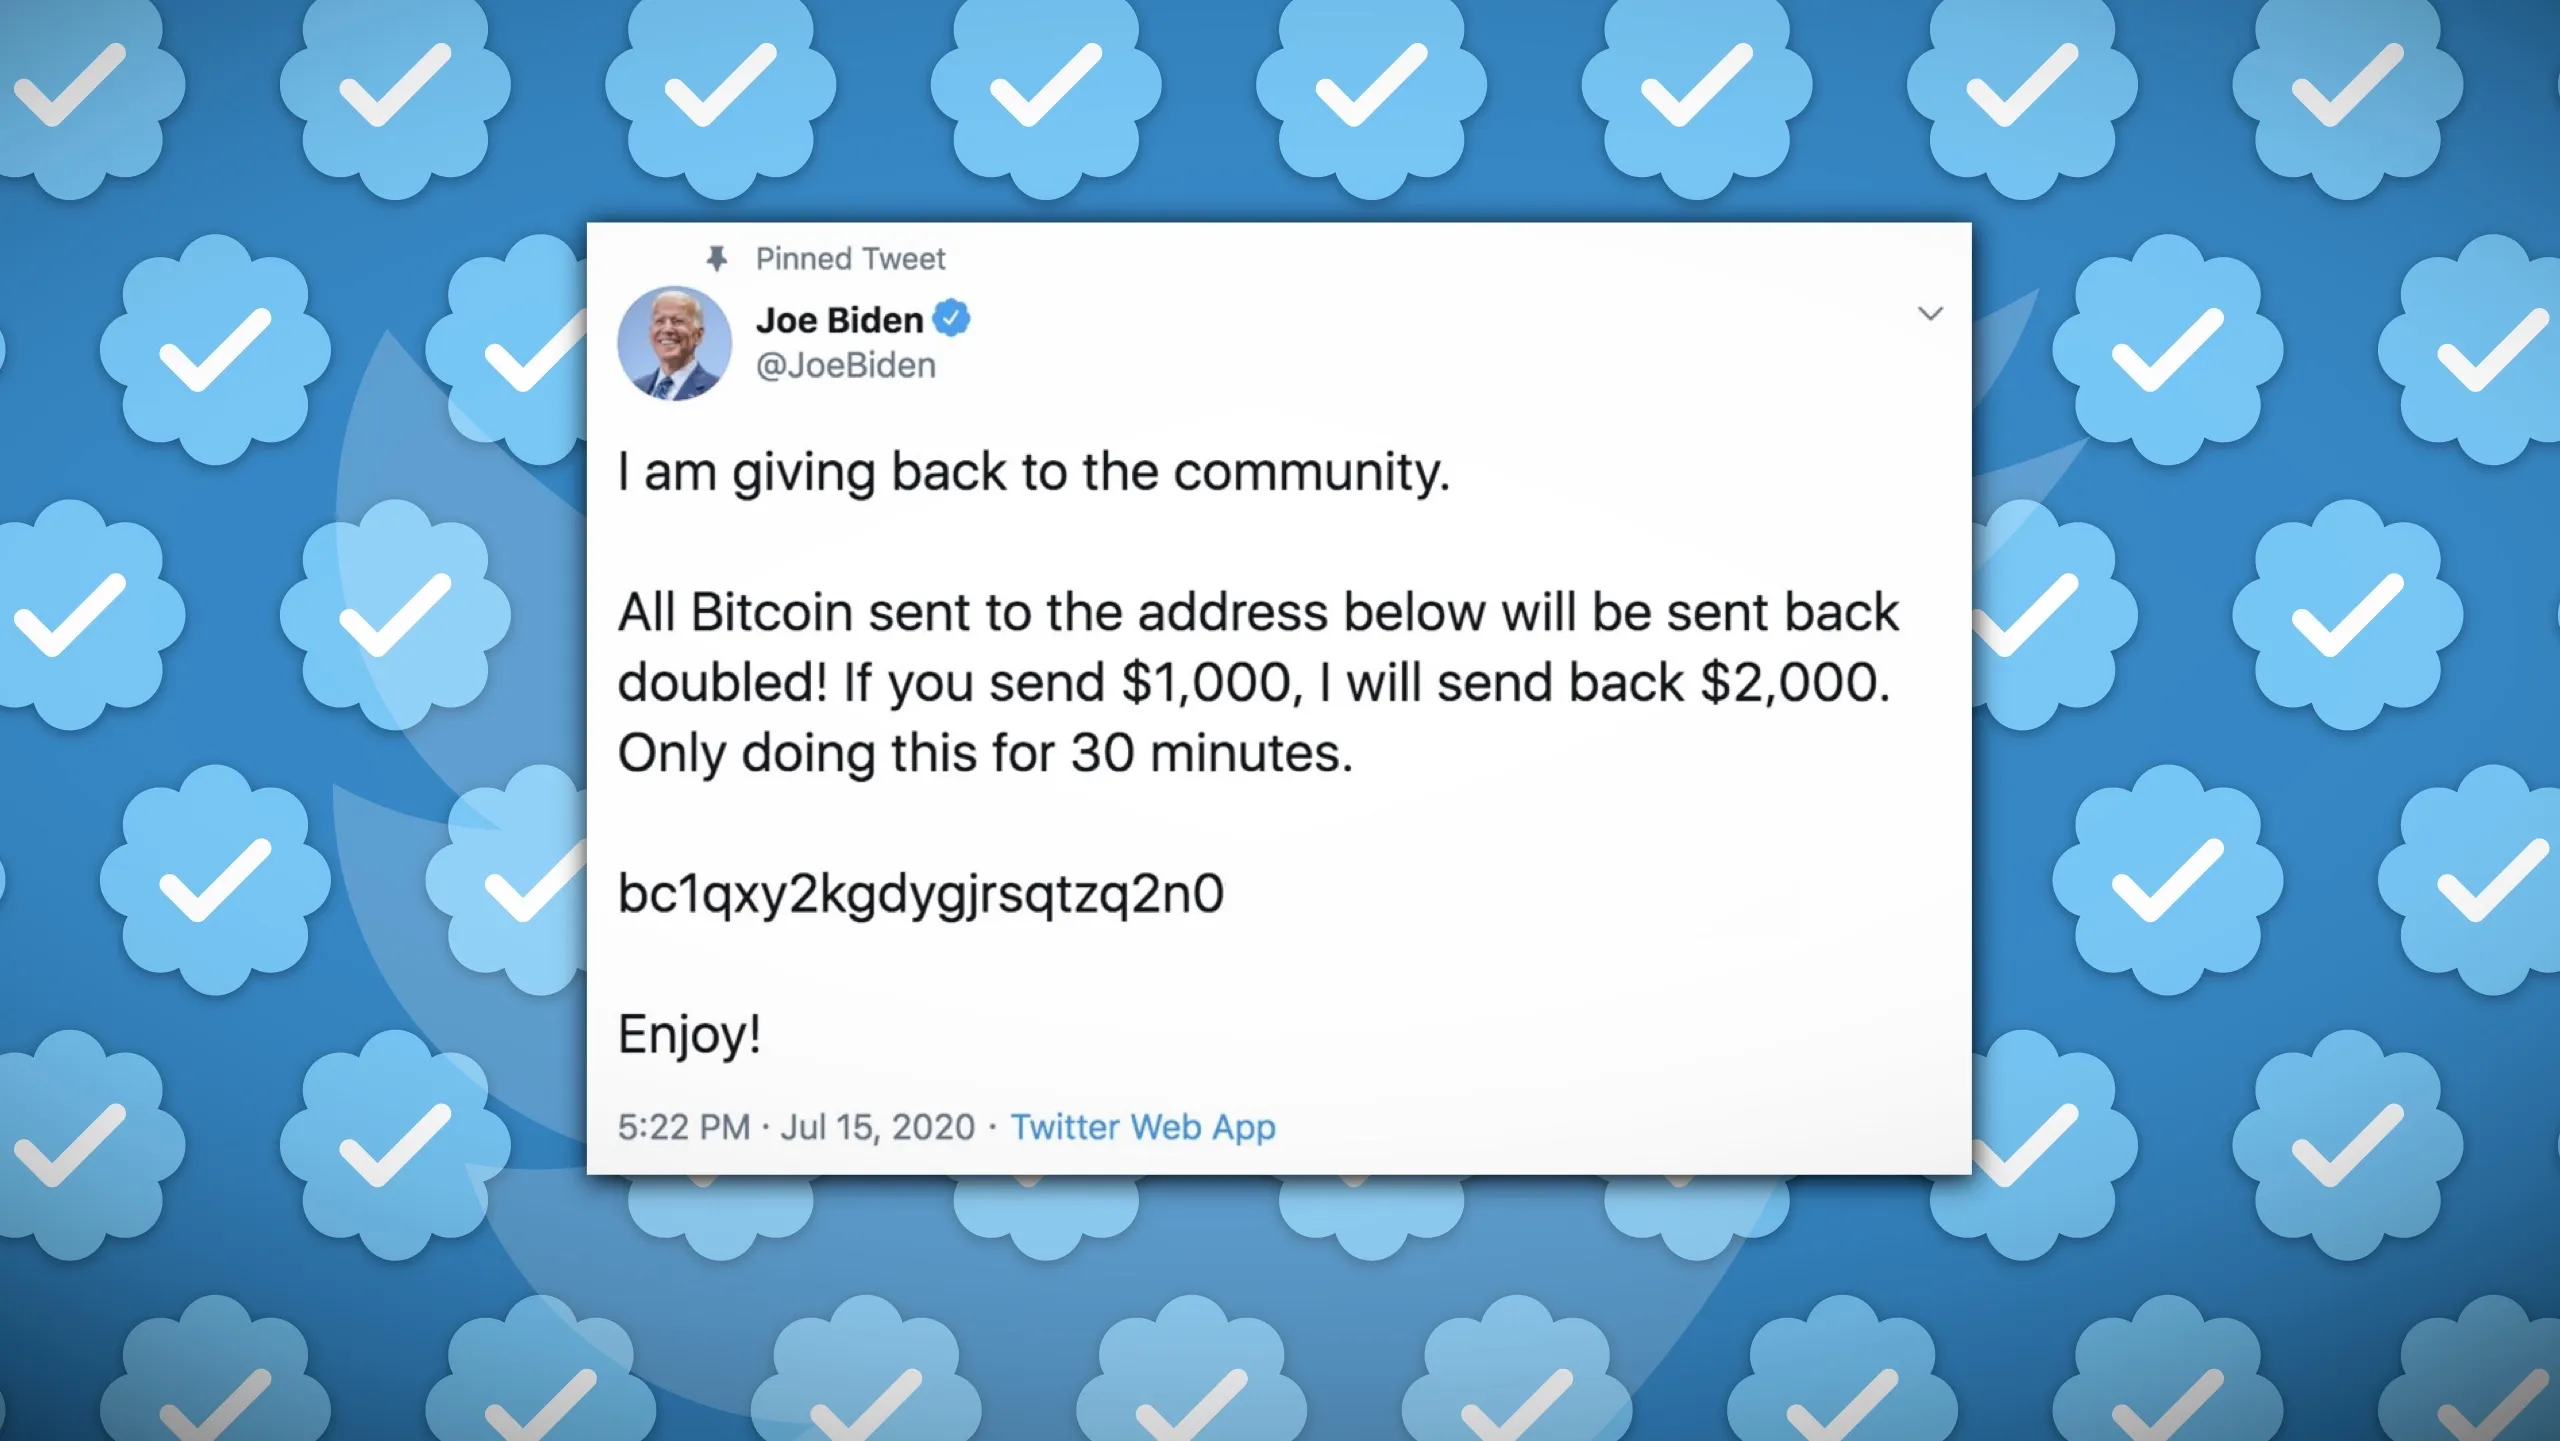 Uno sfondo di verifiche blu su Twitter sovrapposto ad un tweet da un account hackerato di Joe Biden che diffonde uno scam criptovalutario